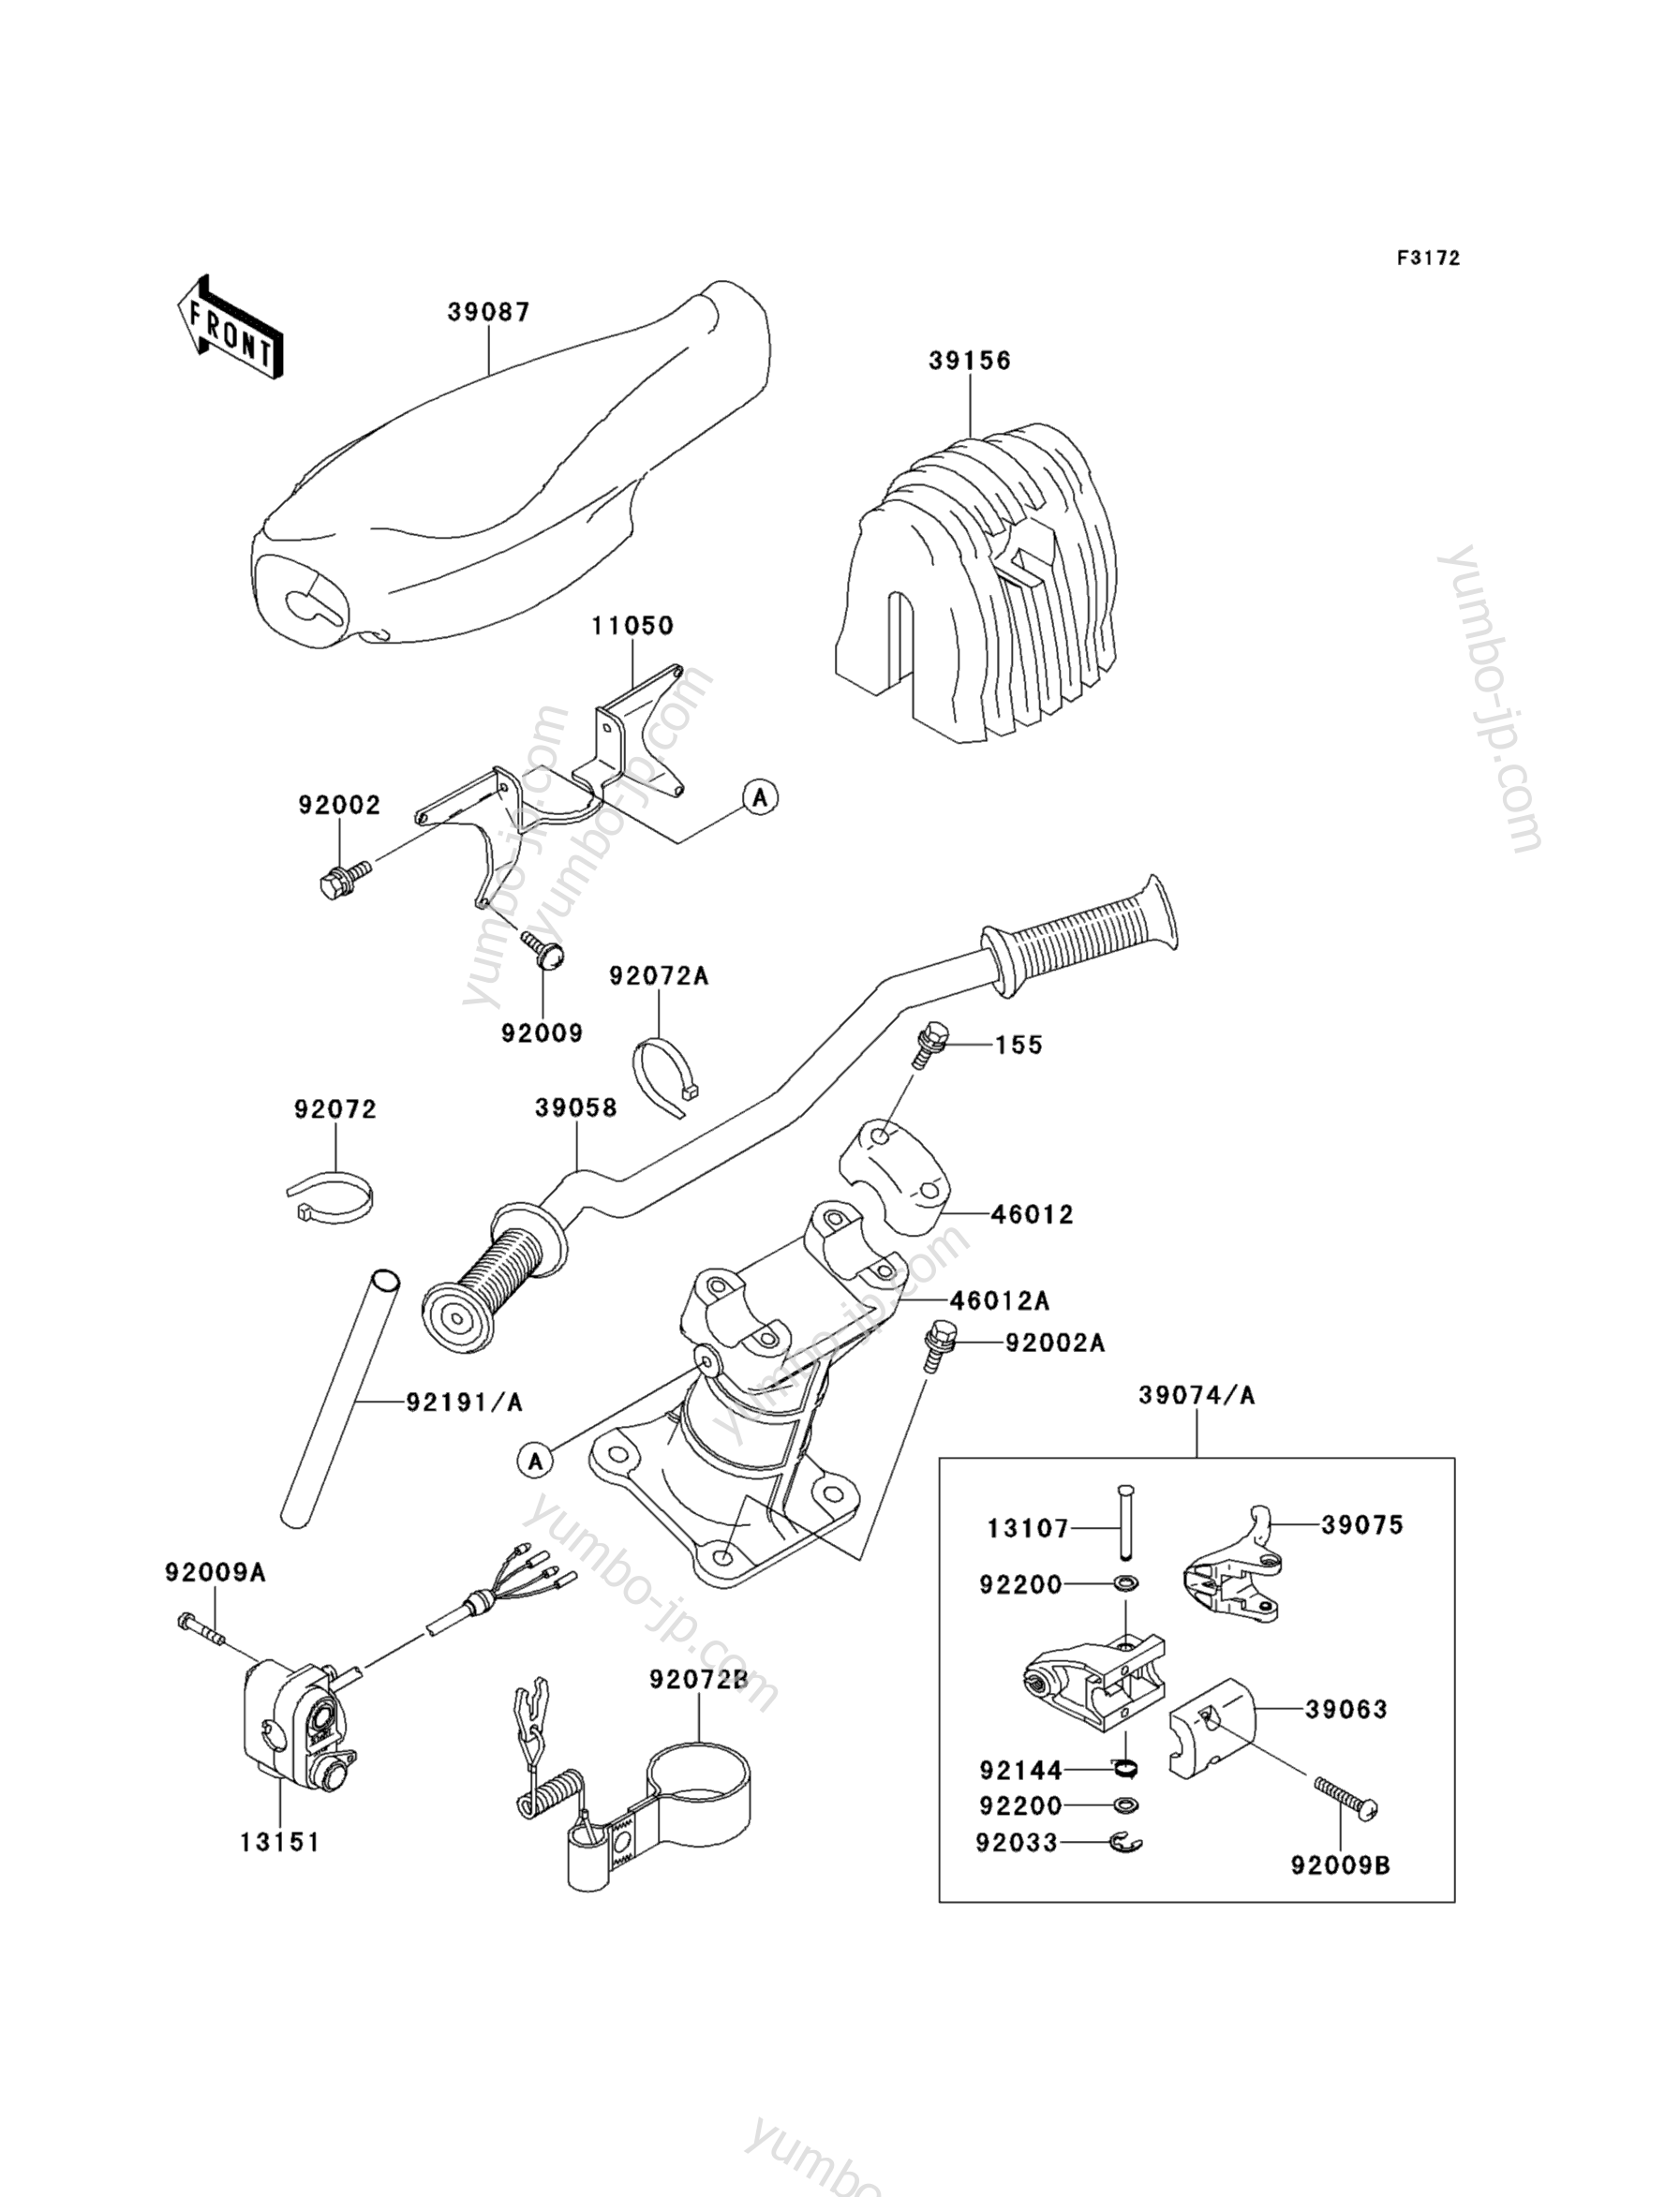 Румпель (рукоятка управления) для гидроциклов KAWASAKI JET SKI 900 STX (JT900-B1) 1999 г.